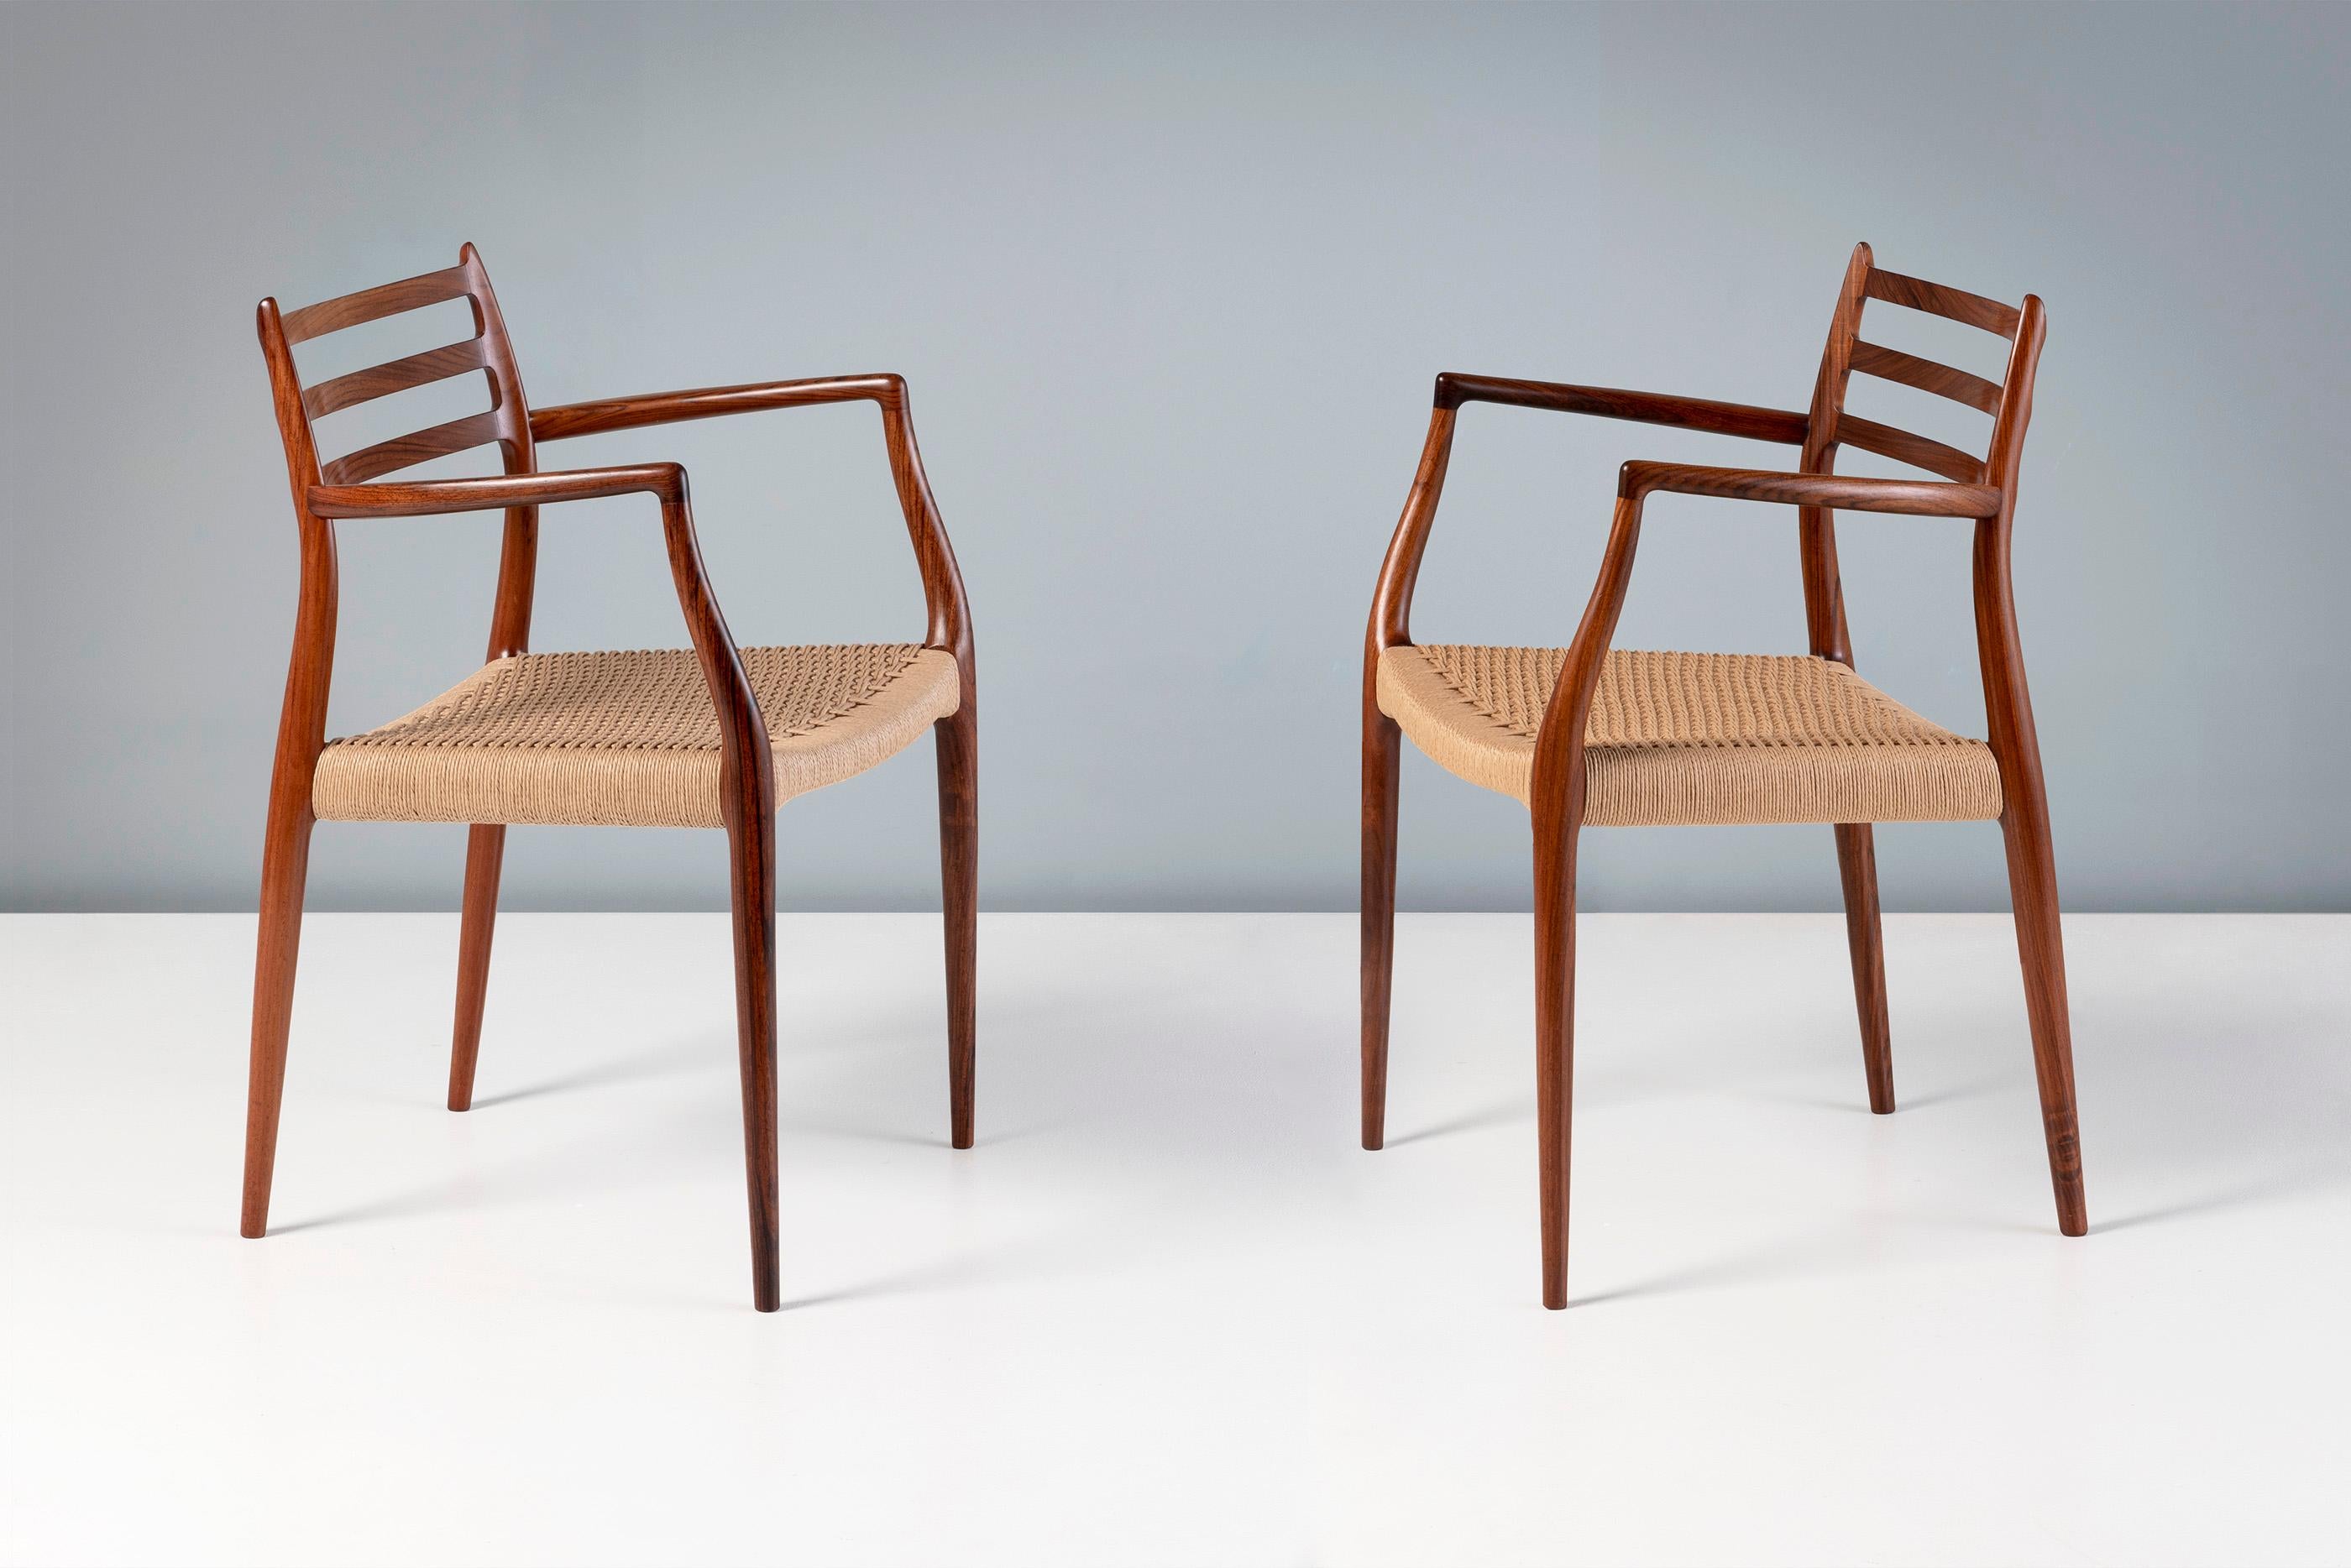 Niels Moller - Paar Sessel Modell 62 aus Palisanderholz und Papierkordel, 1962

Seltene Ausgabe dieses kultigen Designs aus exquisitem, stark gemasertem Palisanderholz. Entworfen von Niels Moller für sein eigenes Unternehmen: J.L. Moller Mobelfabrik